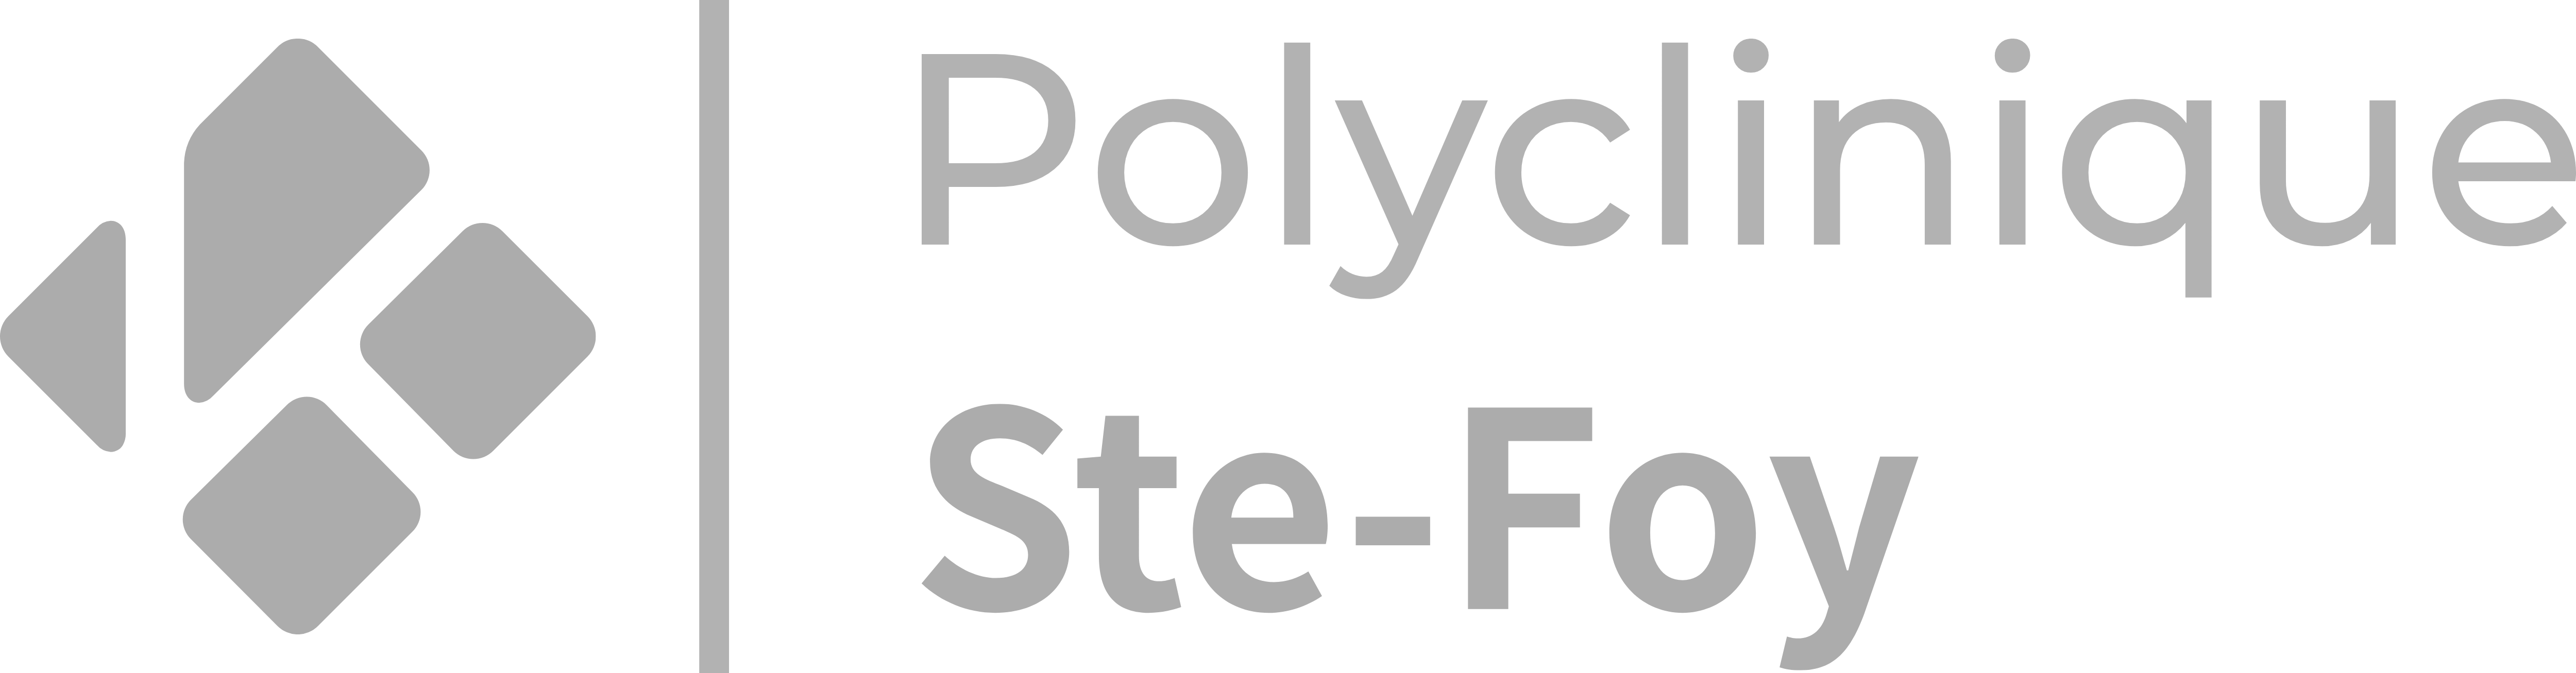 Polyclinique Ste-Foy, vous offrirons un service exceptionnel et notre clinique chiropraticien Actif sont partenaire depuis plusieurs années